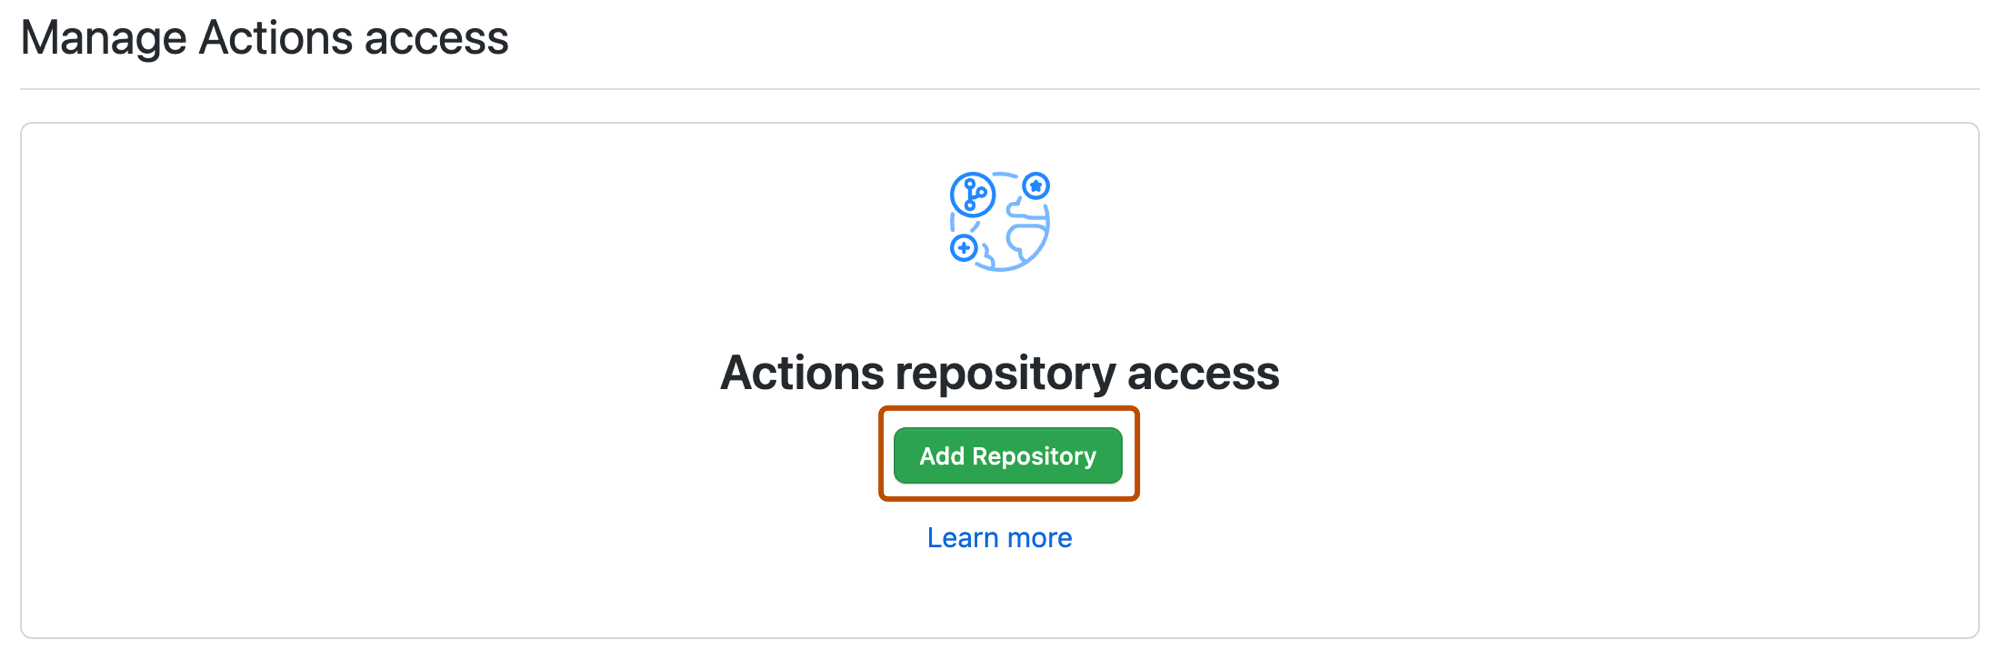 Captura de tela da seção "Gerenciar acesso a Ações" da página de configurações do pacote. O botão "Adicionar repositório" é realçado com um contorno laranja.